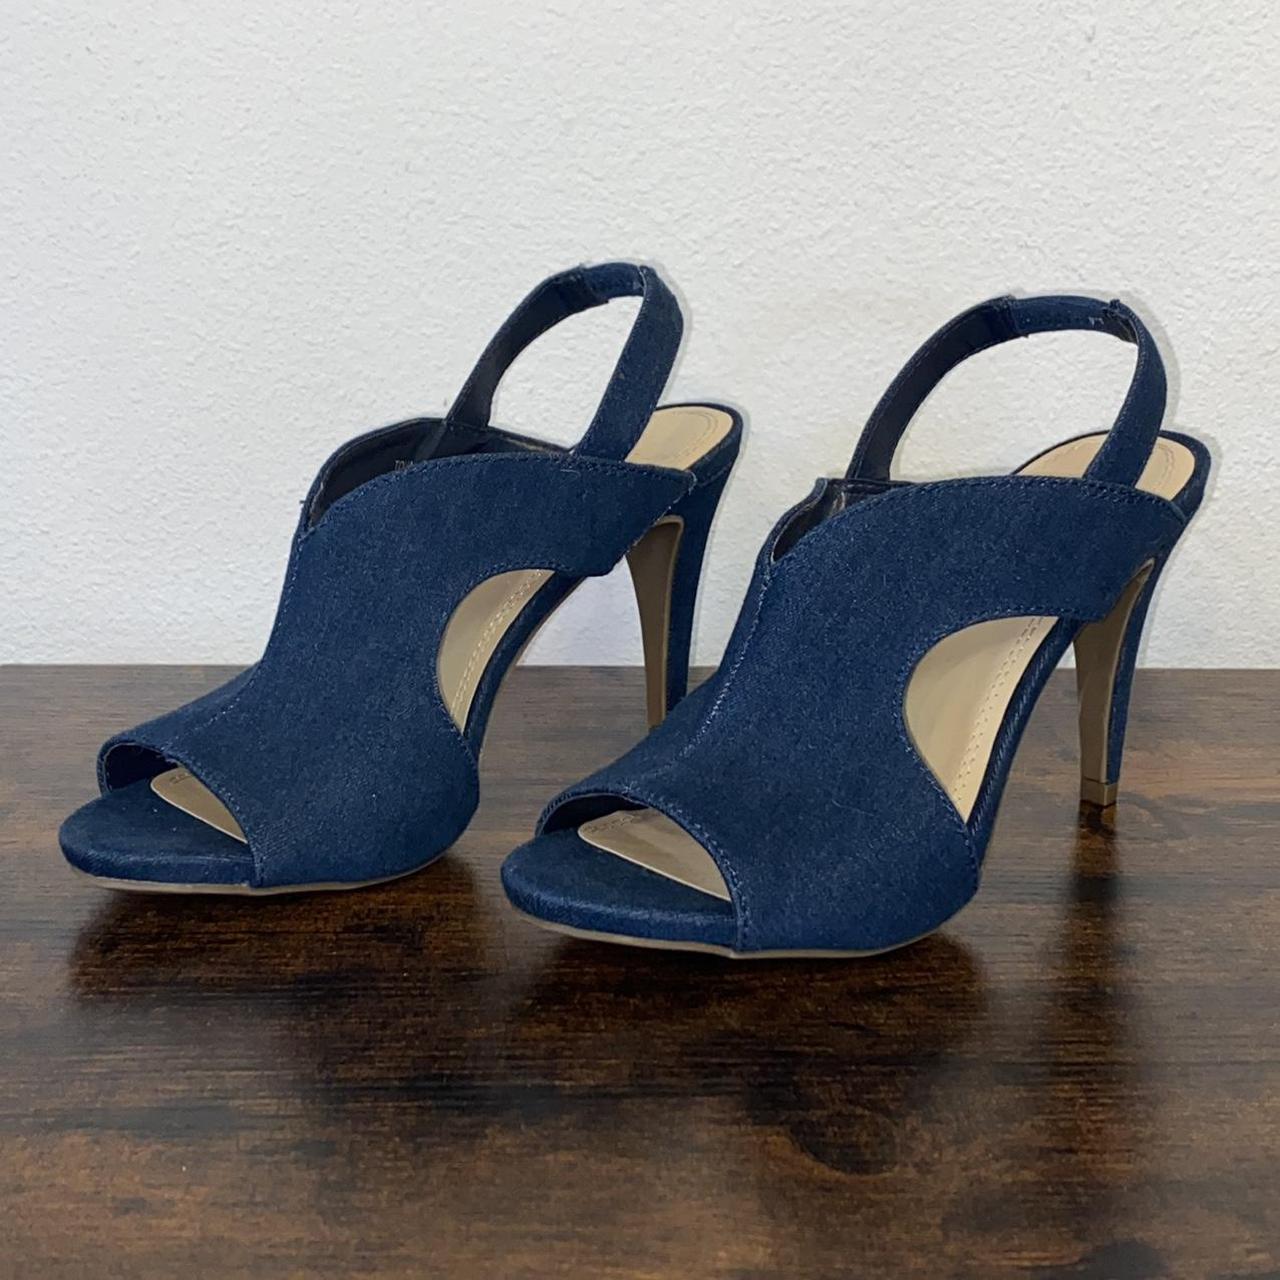 Product Image 2 - Denim heels. Heel is 4”.